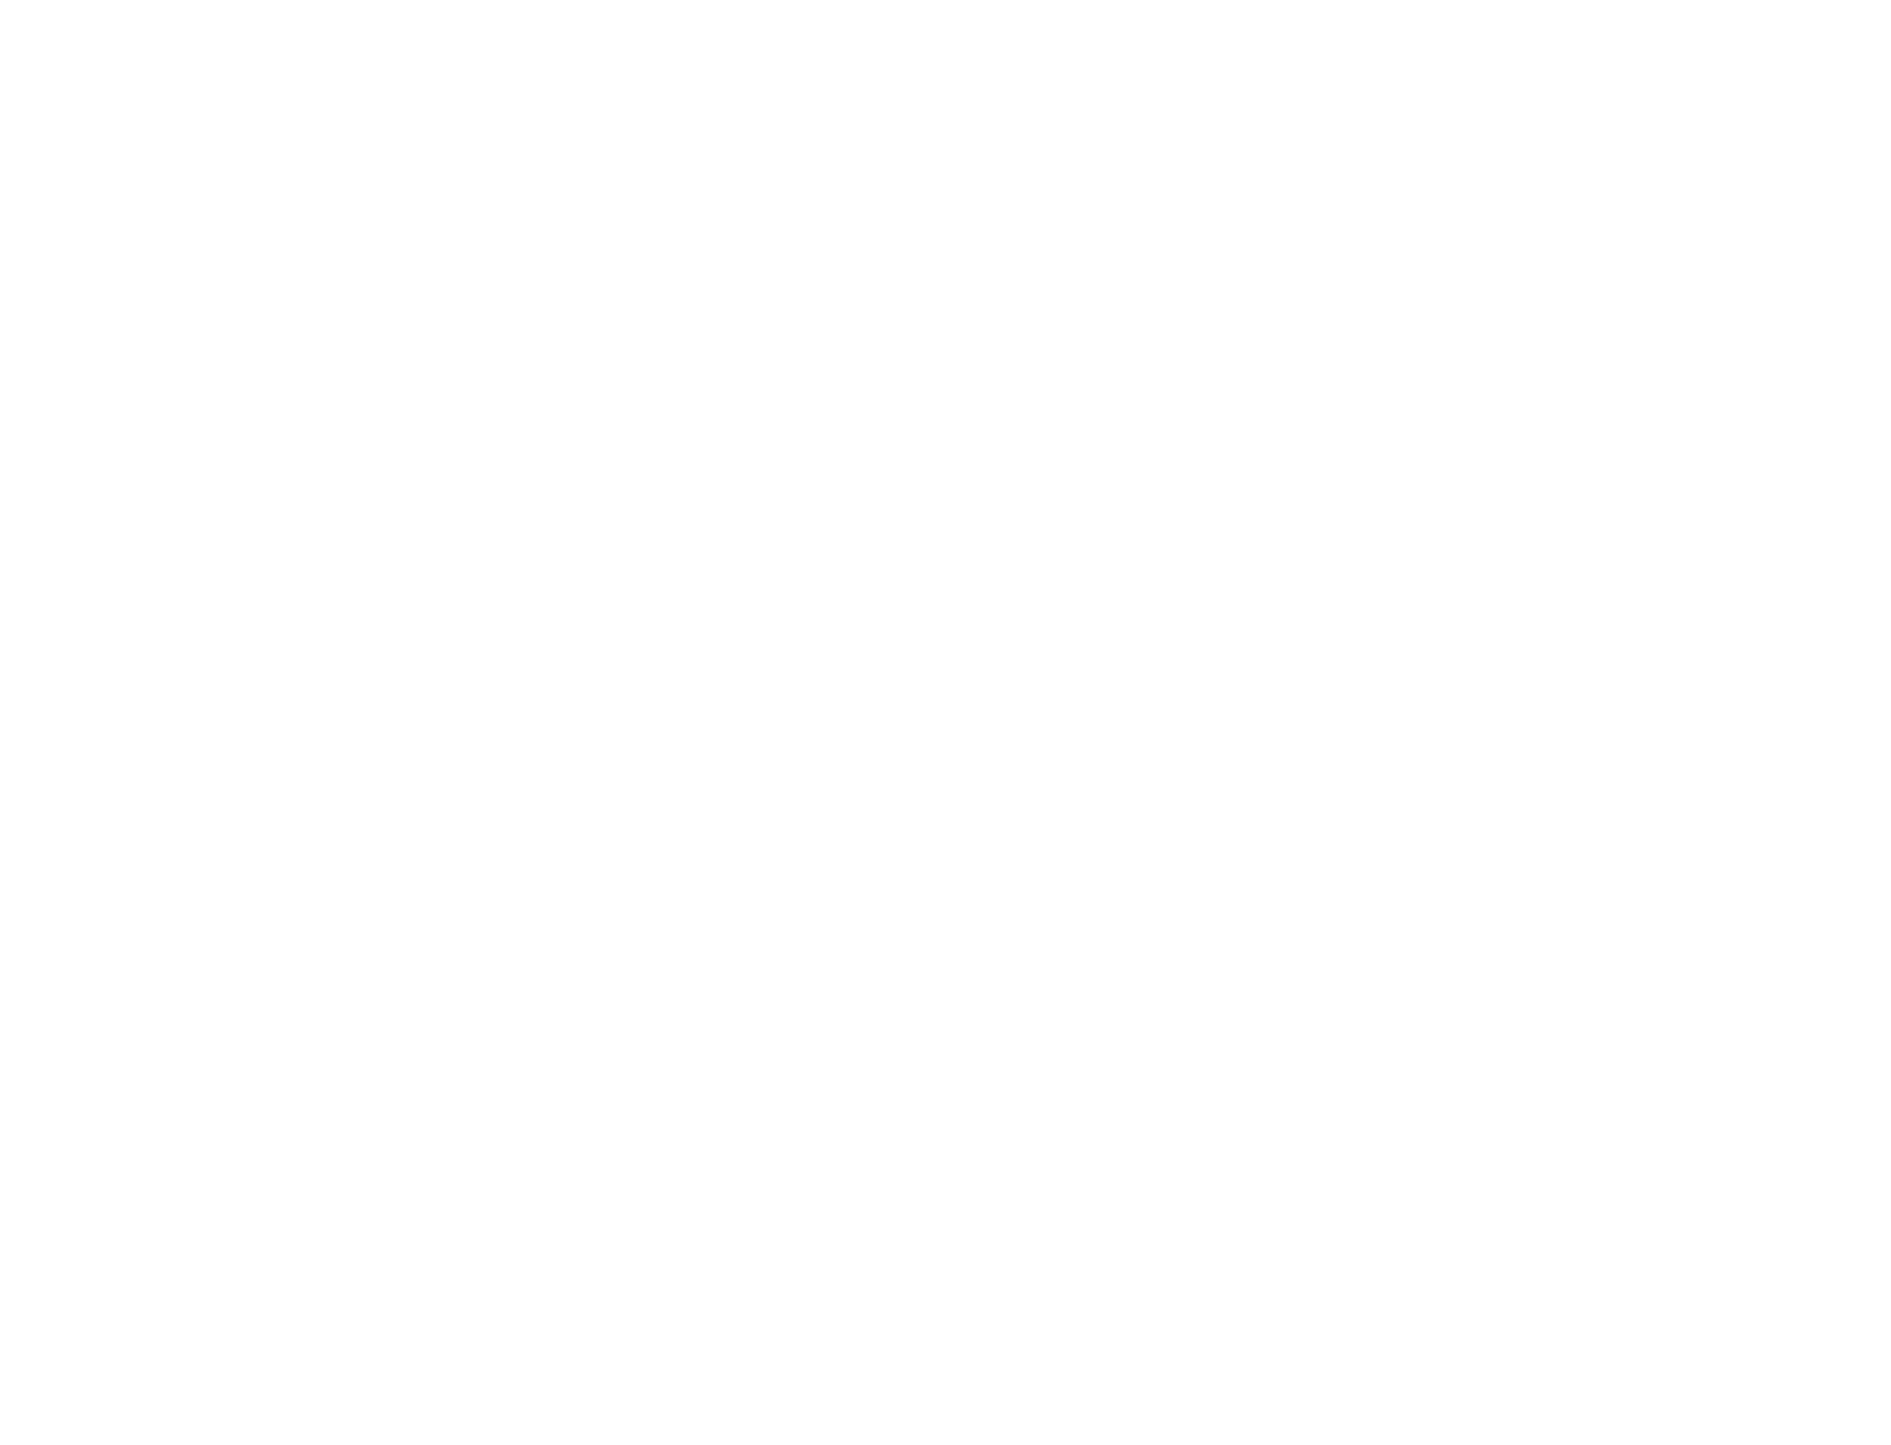 Eik Servering logo